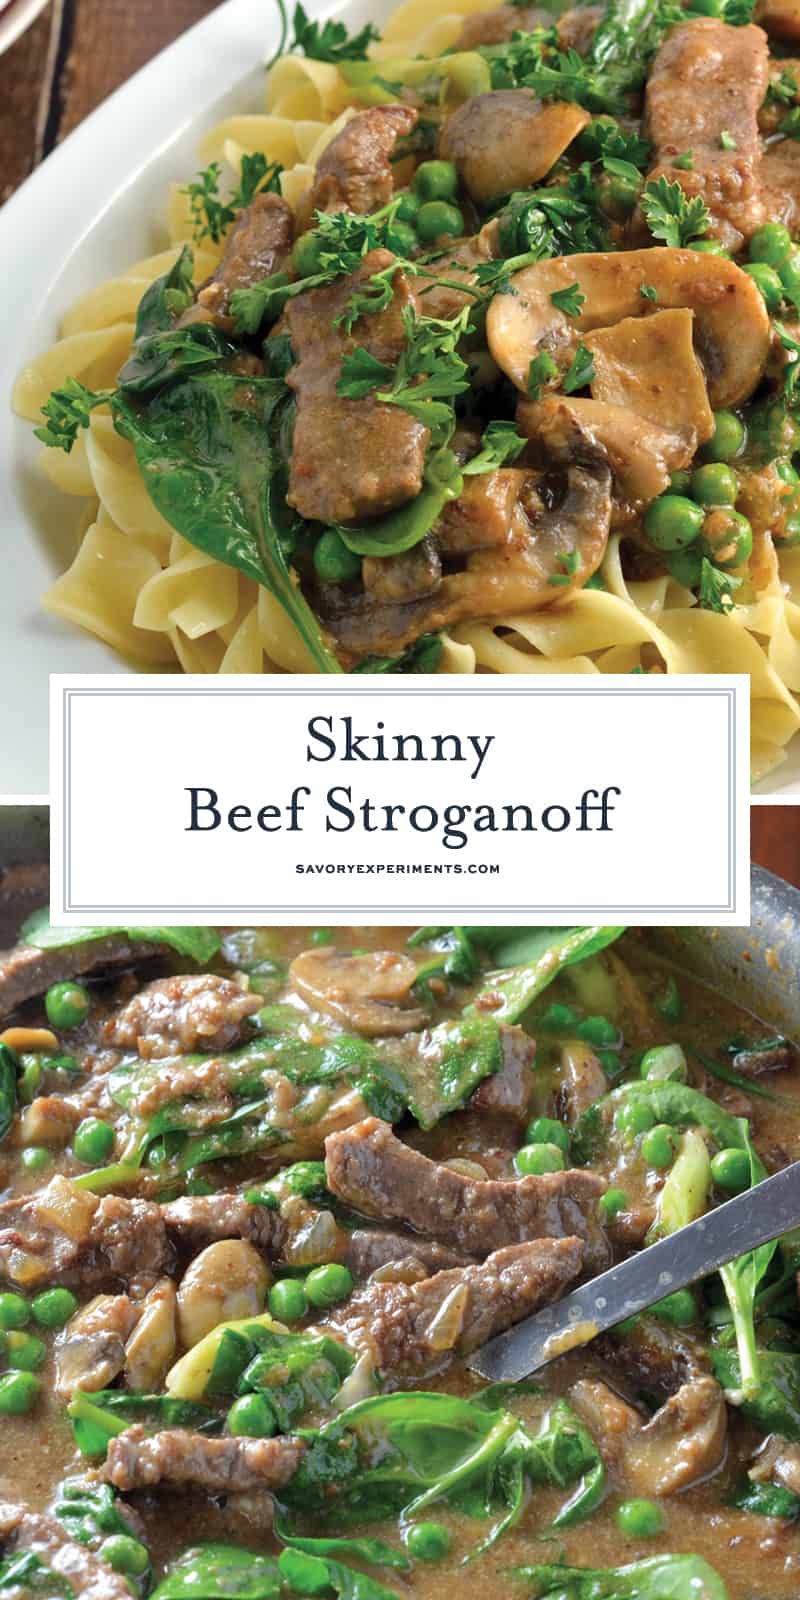 Skinny Beef Stroganoff använd en hemlig ingrediens för att göra detta till en låg kalori krämig maträtt. Tillsätt ärtor och spenat för extra veggie! # beefstroganoff www.savoryexperiments.com 